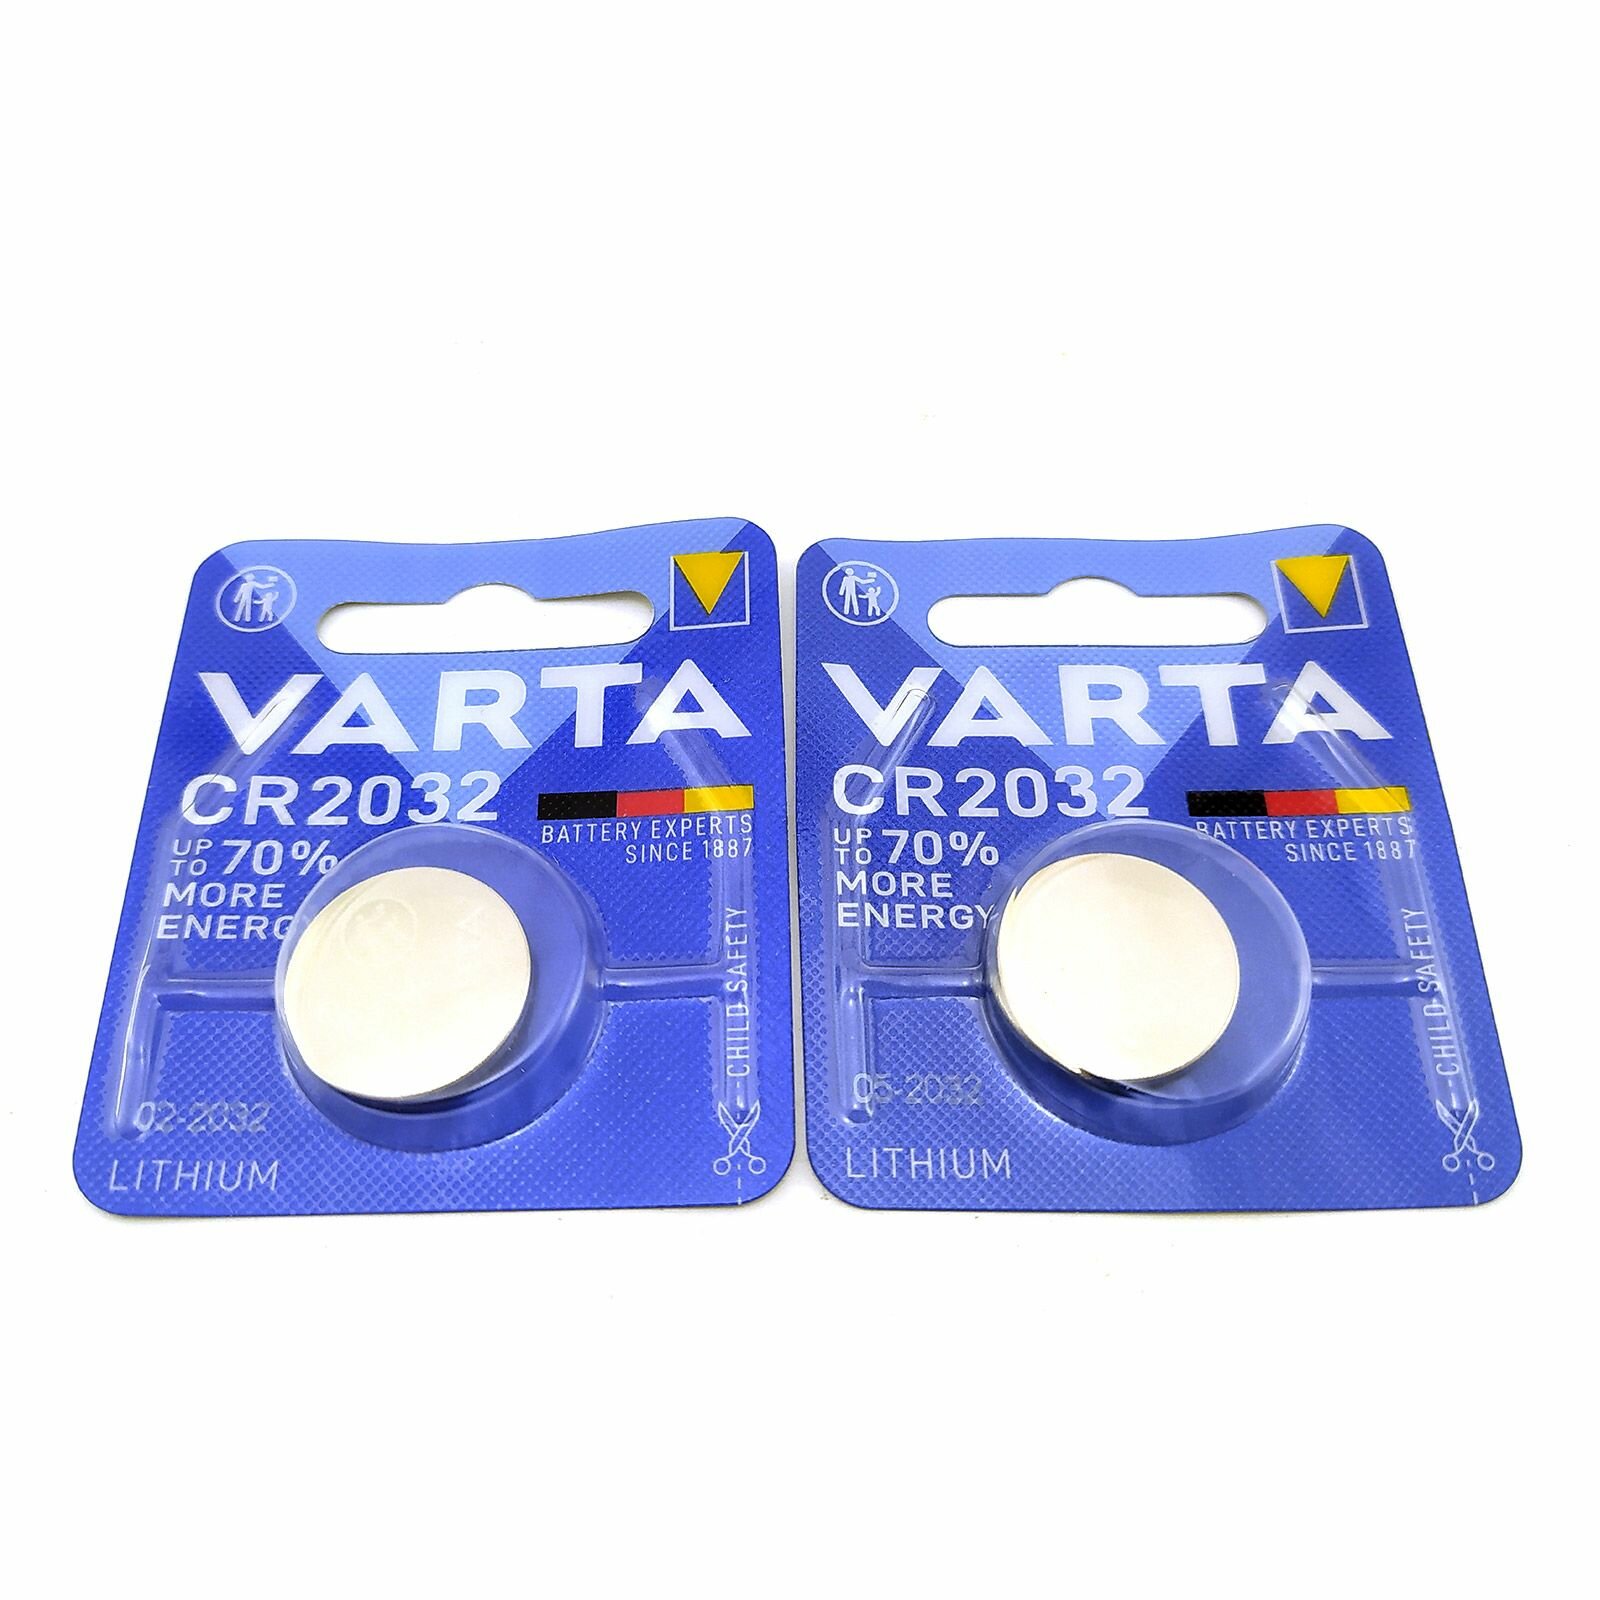 Батарейки (2шт) VARTA CR2032 3В (6032) литиевые дисковые (1шт*2)